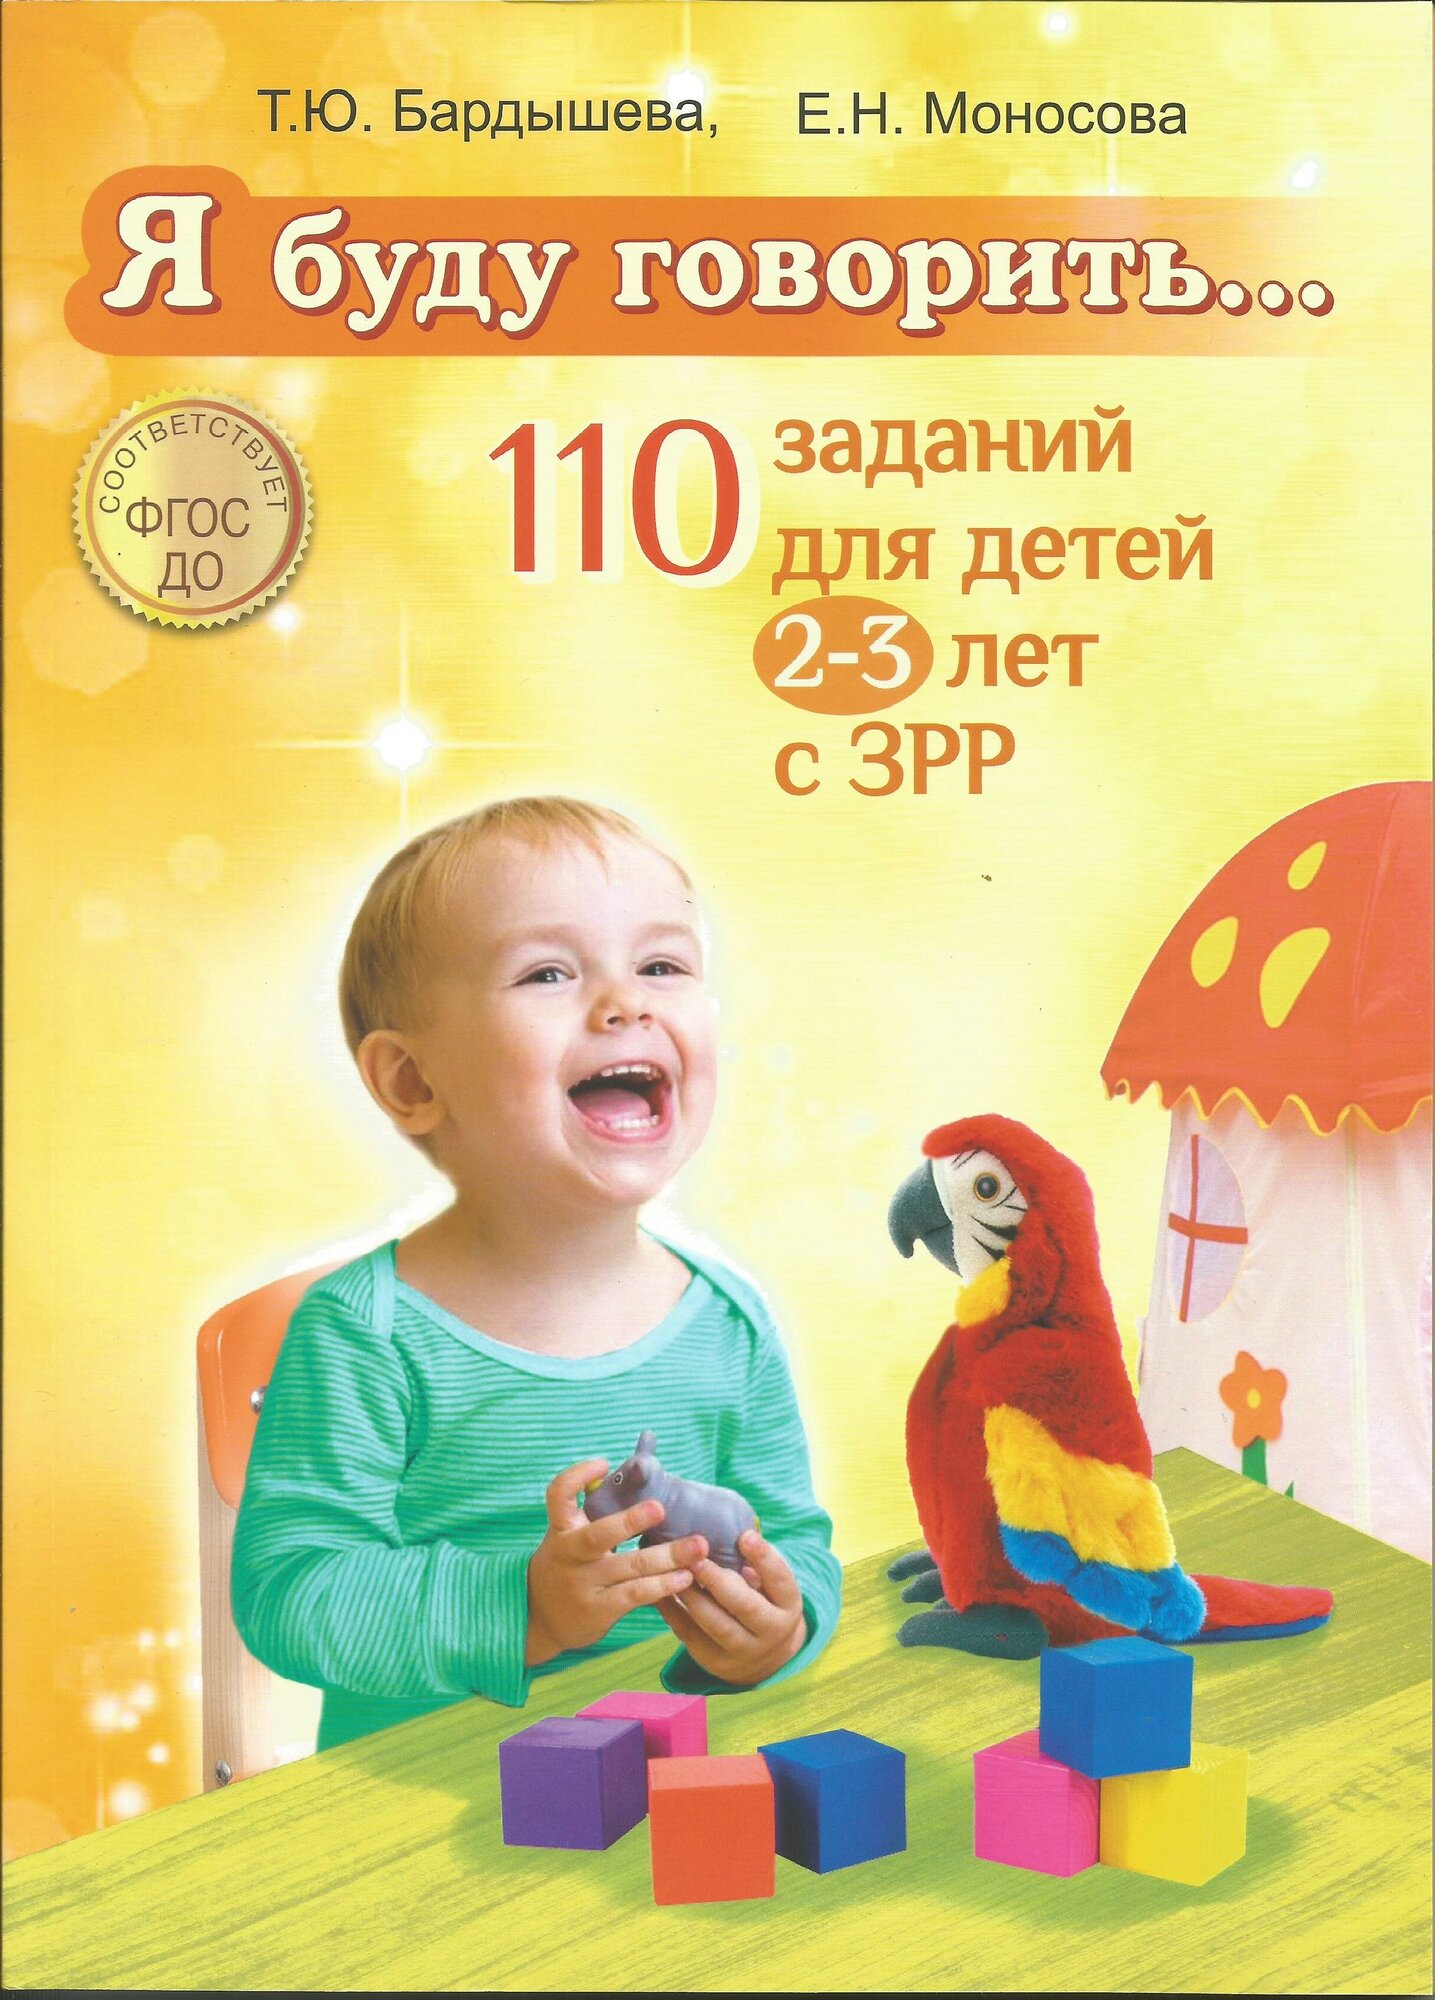 Я буду говорить.110 заданий для детей 2-3 лет с ЗРР. Т. Ю. Бардышева, Е. Н. Моносова